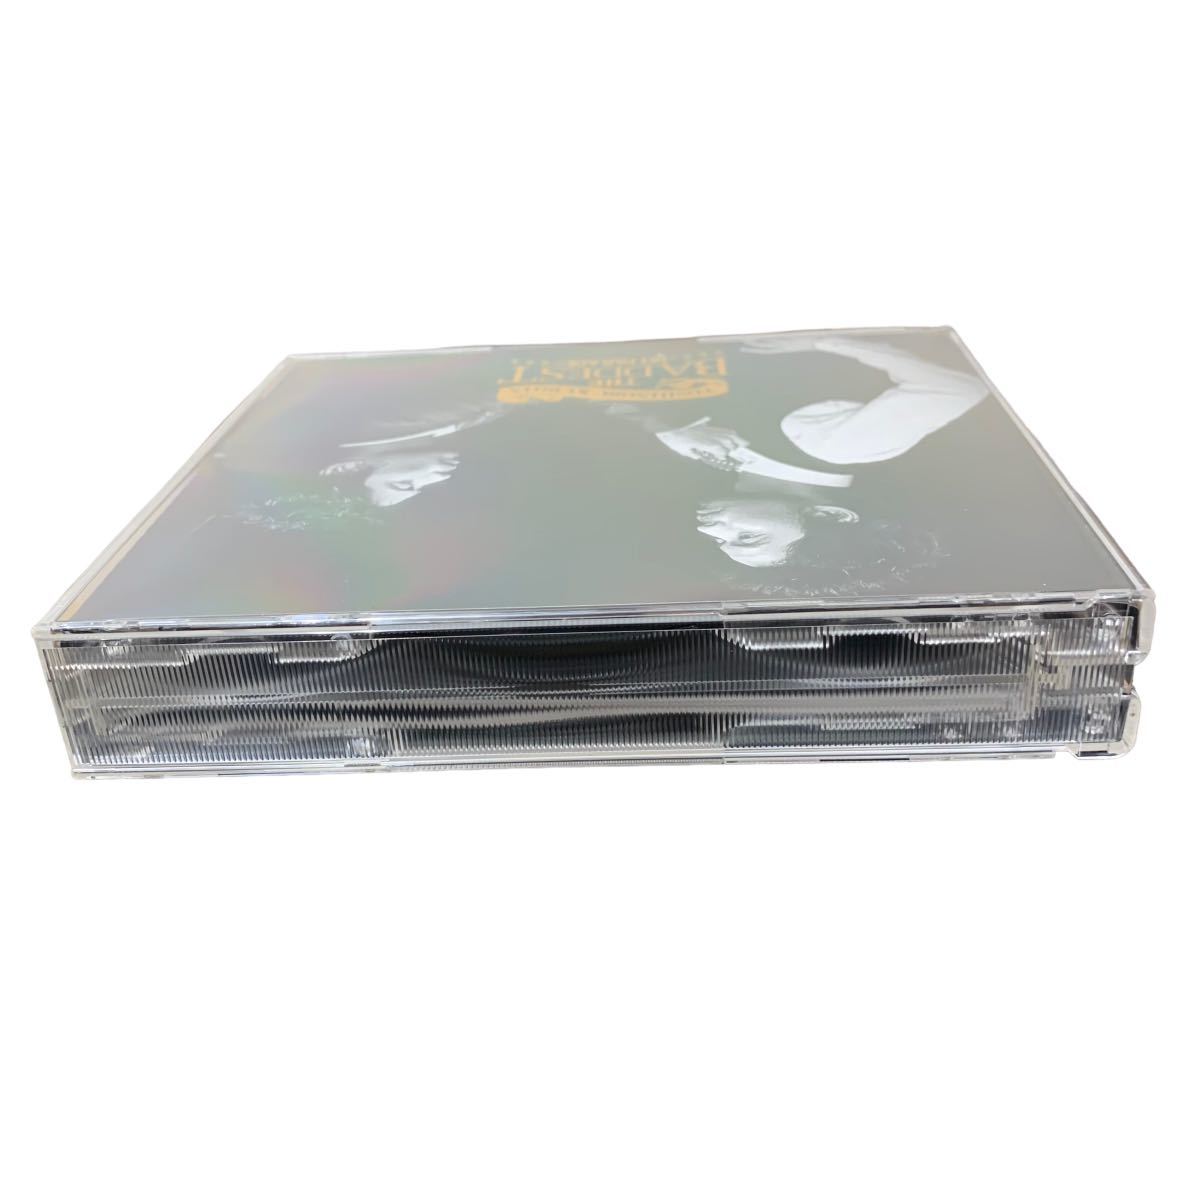 【5600－37】未使用品 久保田利伸 / THE BADDEST -Hit Parade-セル版 CD 2枚組SECL TOSHINOBU KUBOTA ベストアルバム BEST_画像5